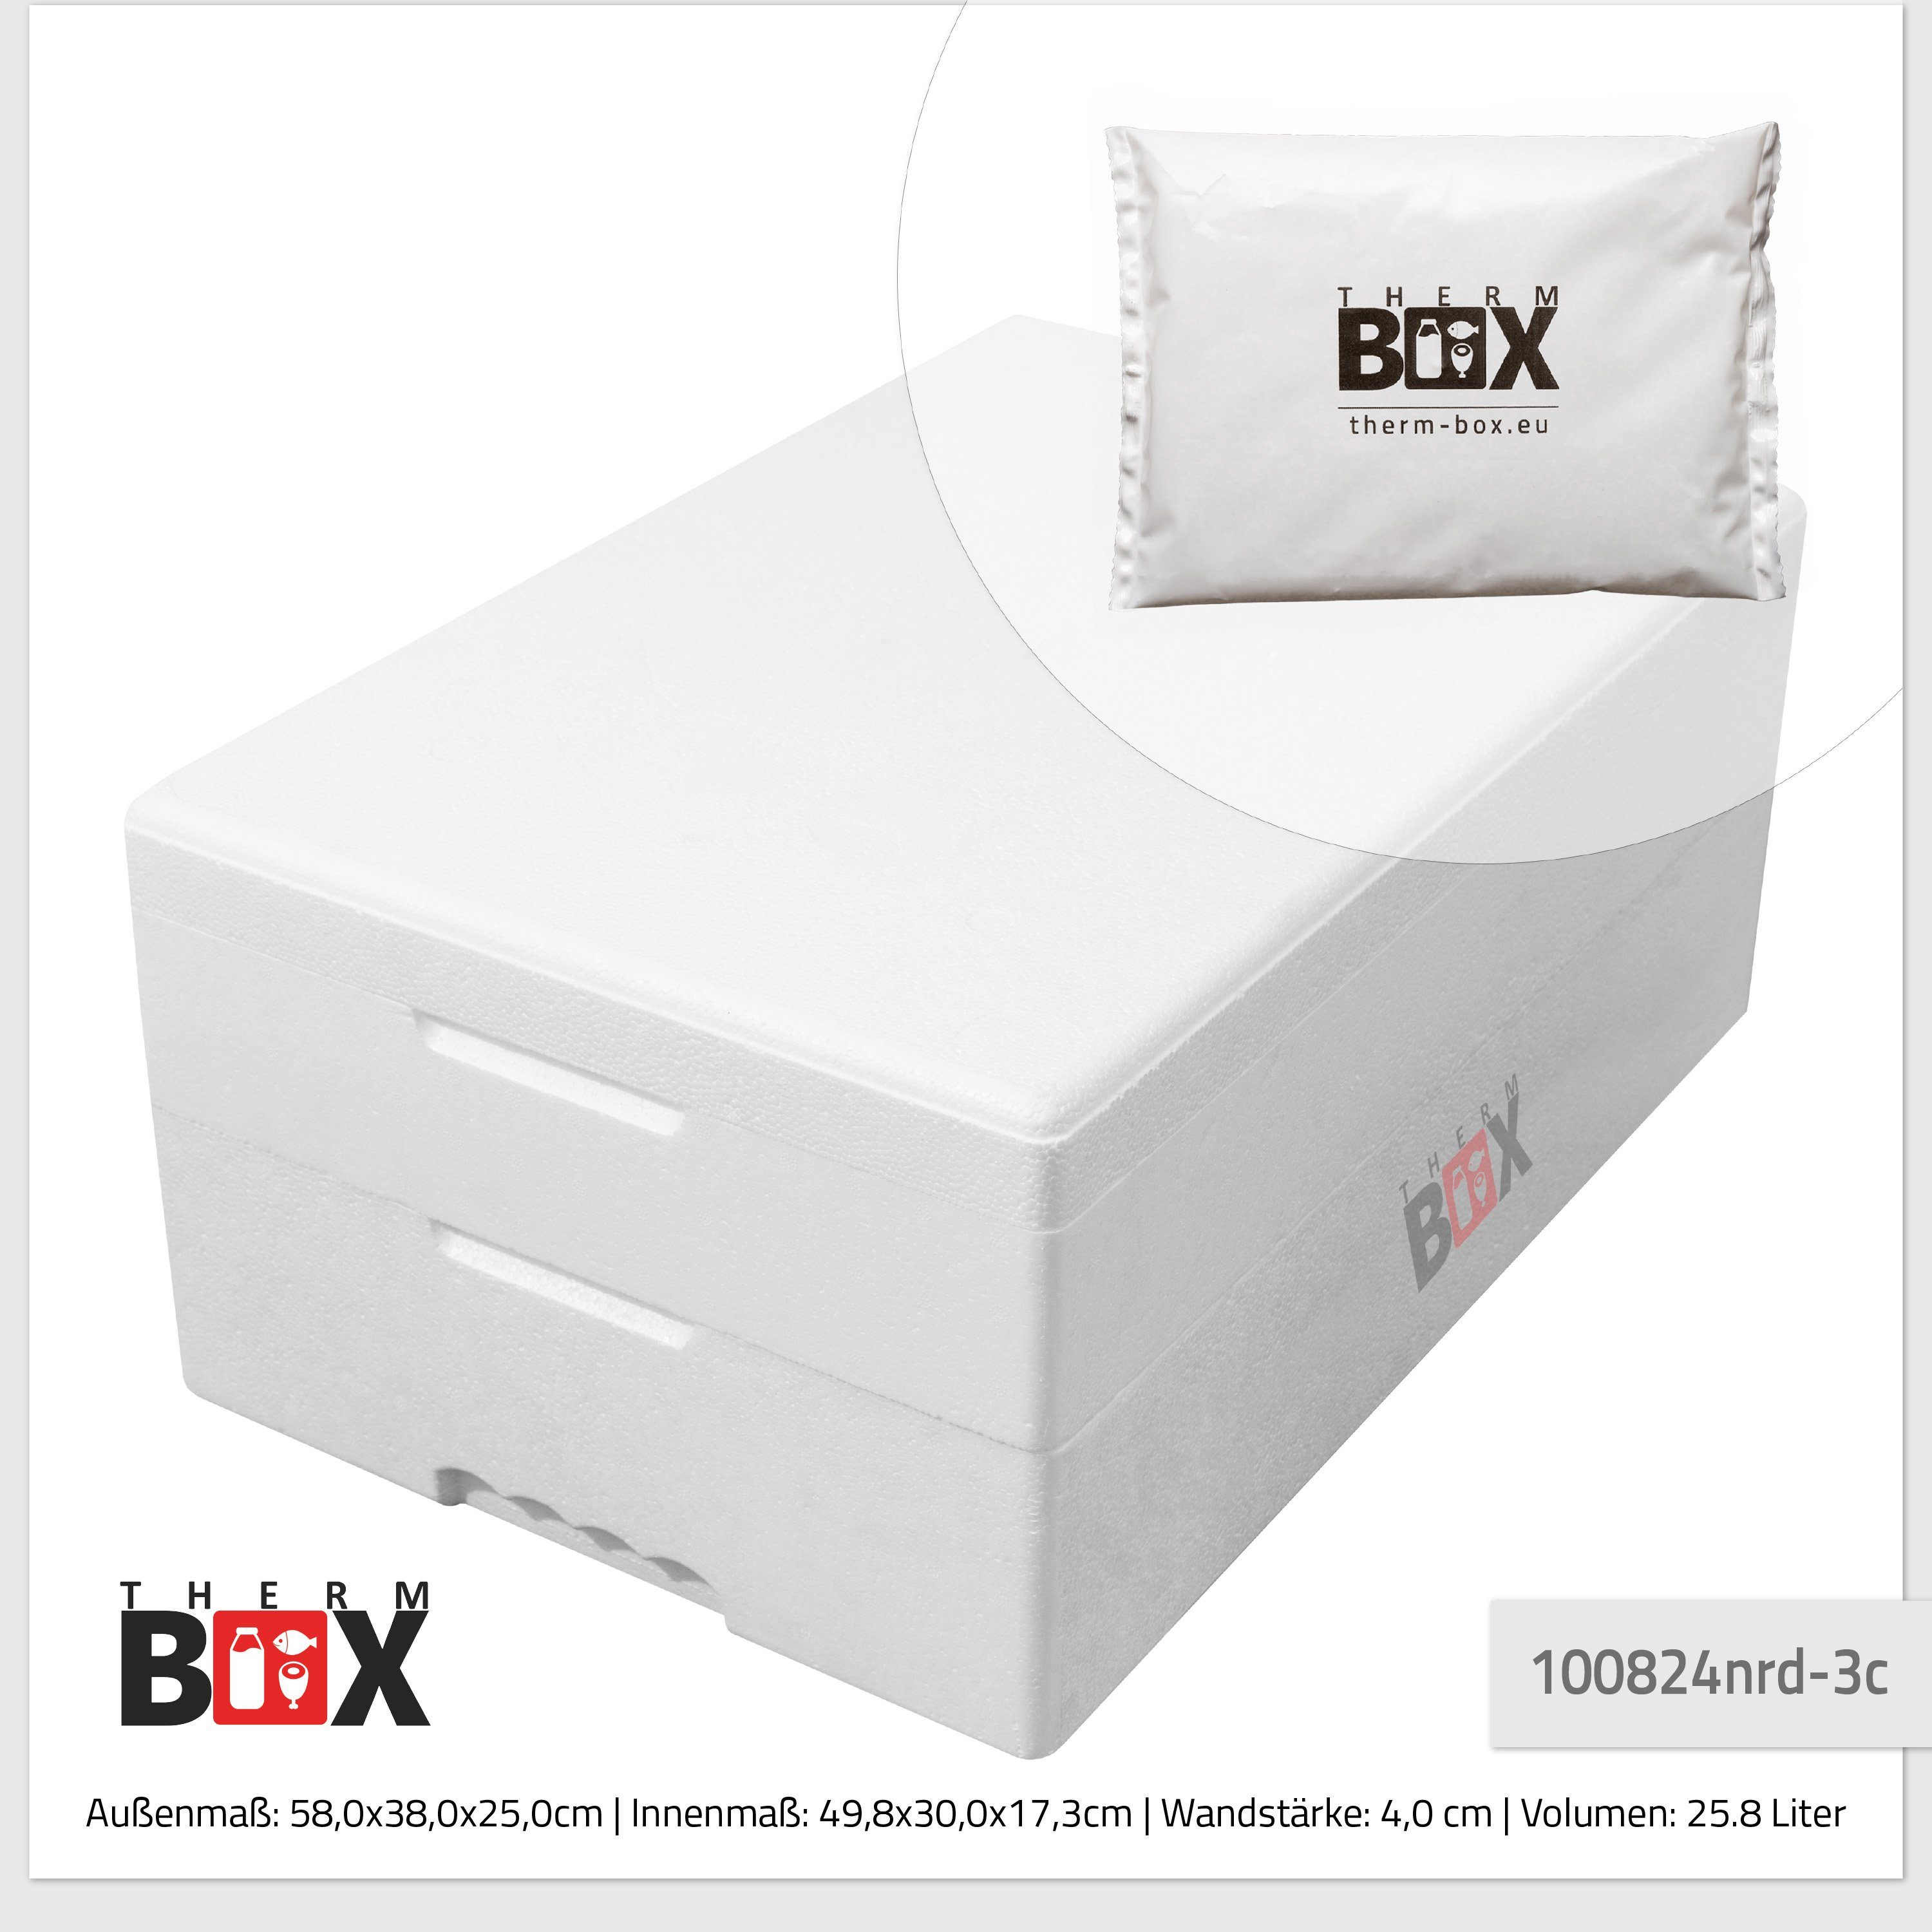 Kühlbox Innen: 25M mit (0-tlg., Styropor-Verdichtet, mit 25,8L Thermbox THERM-BOX Kühlkissen), Thermobehälter Transportbox Thermobehälter für 49x30x17cm 3 Modularbox Kühlkissen,